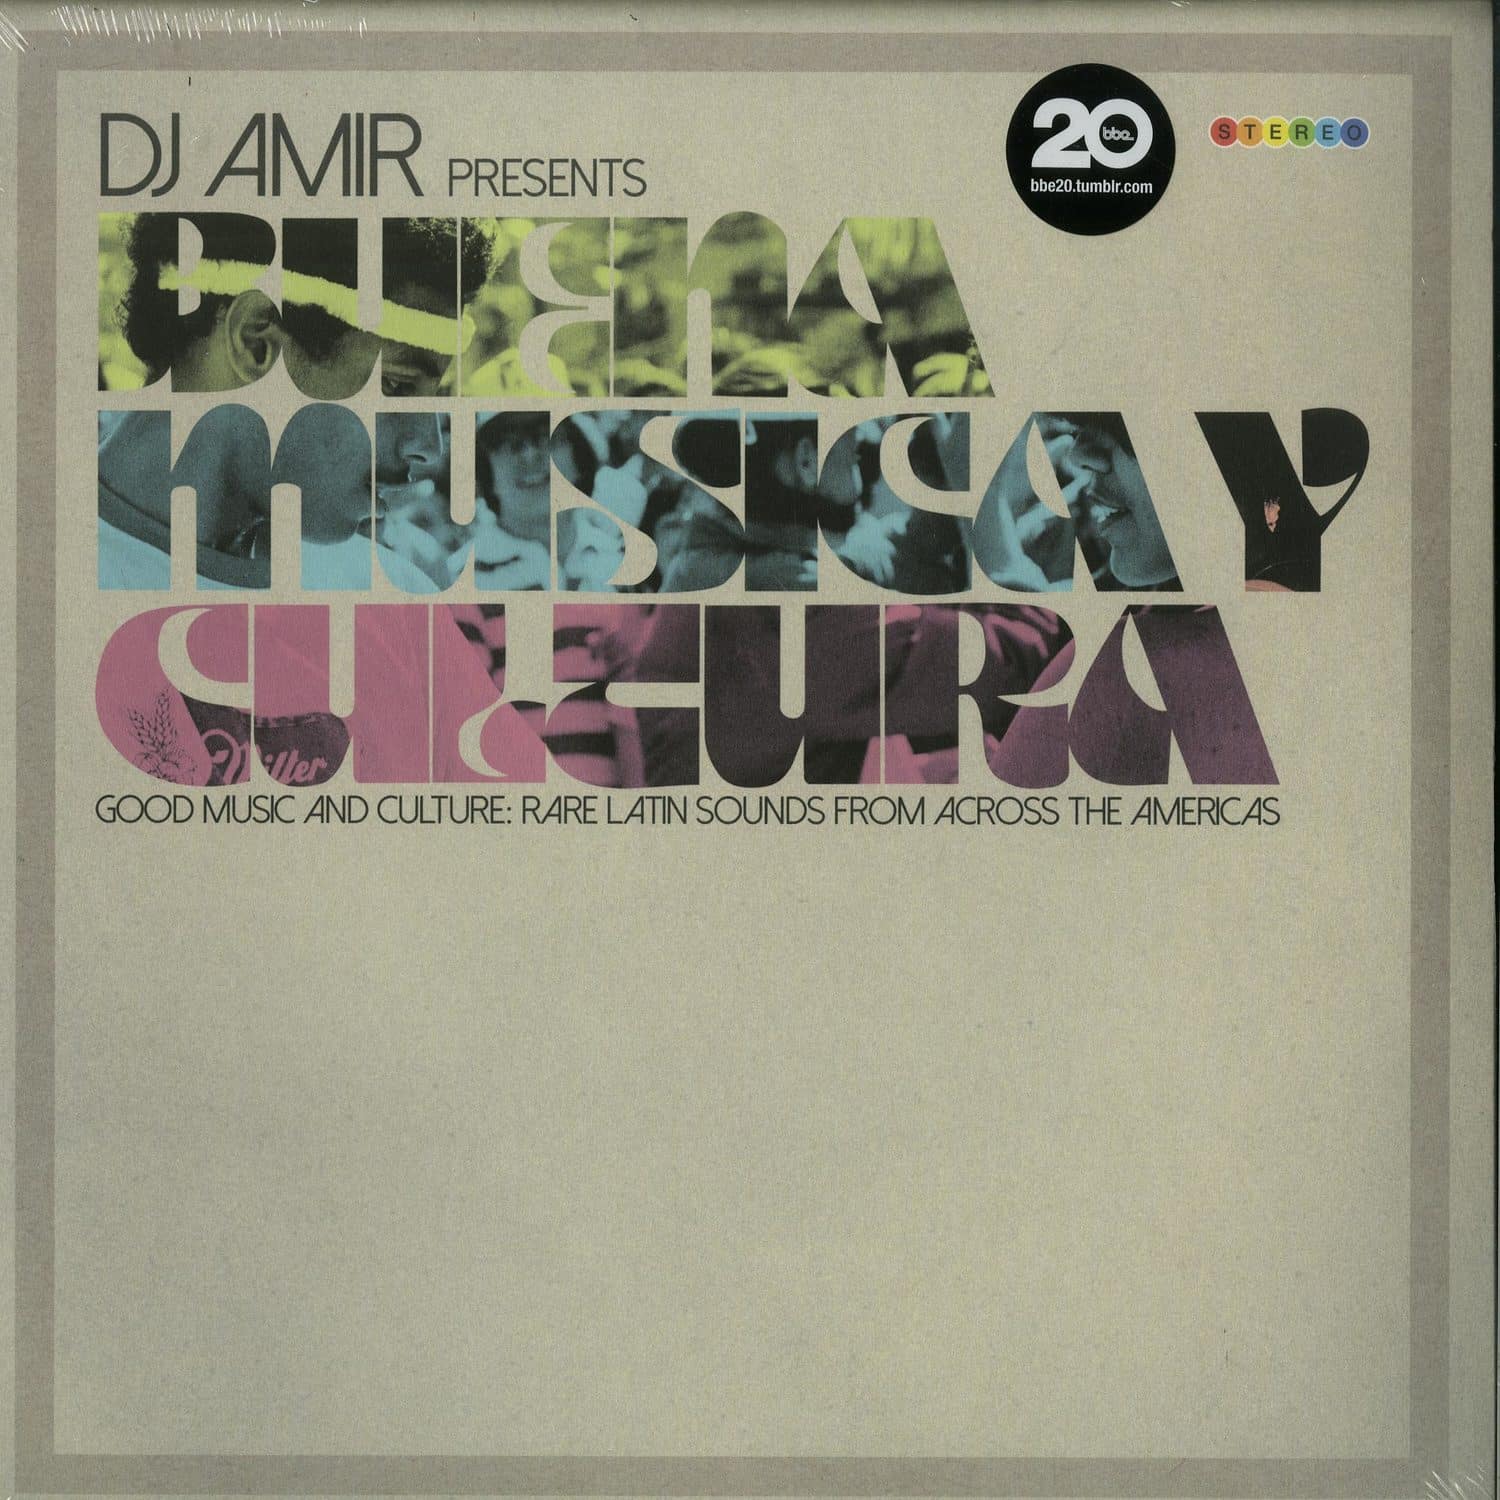 Va Pres. By DJ Amir - BUENA MUSICA Y CULTURA 